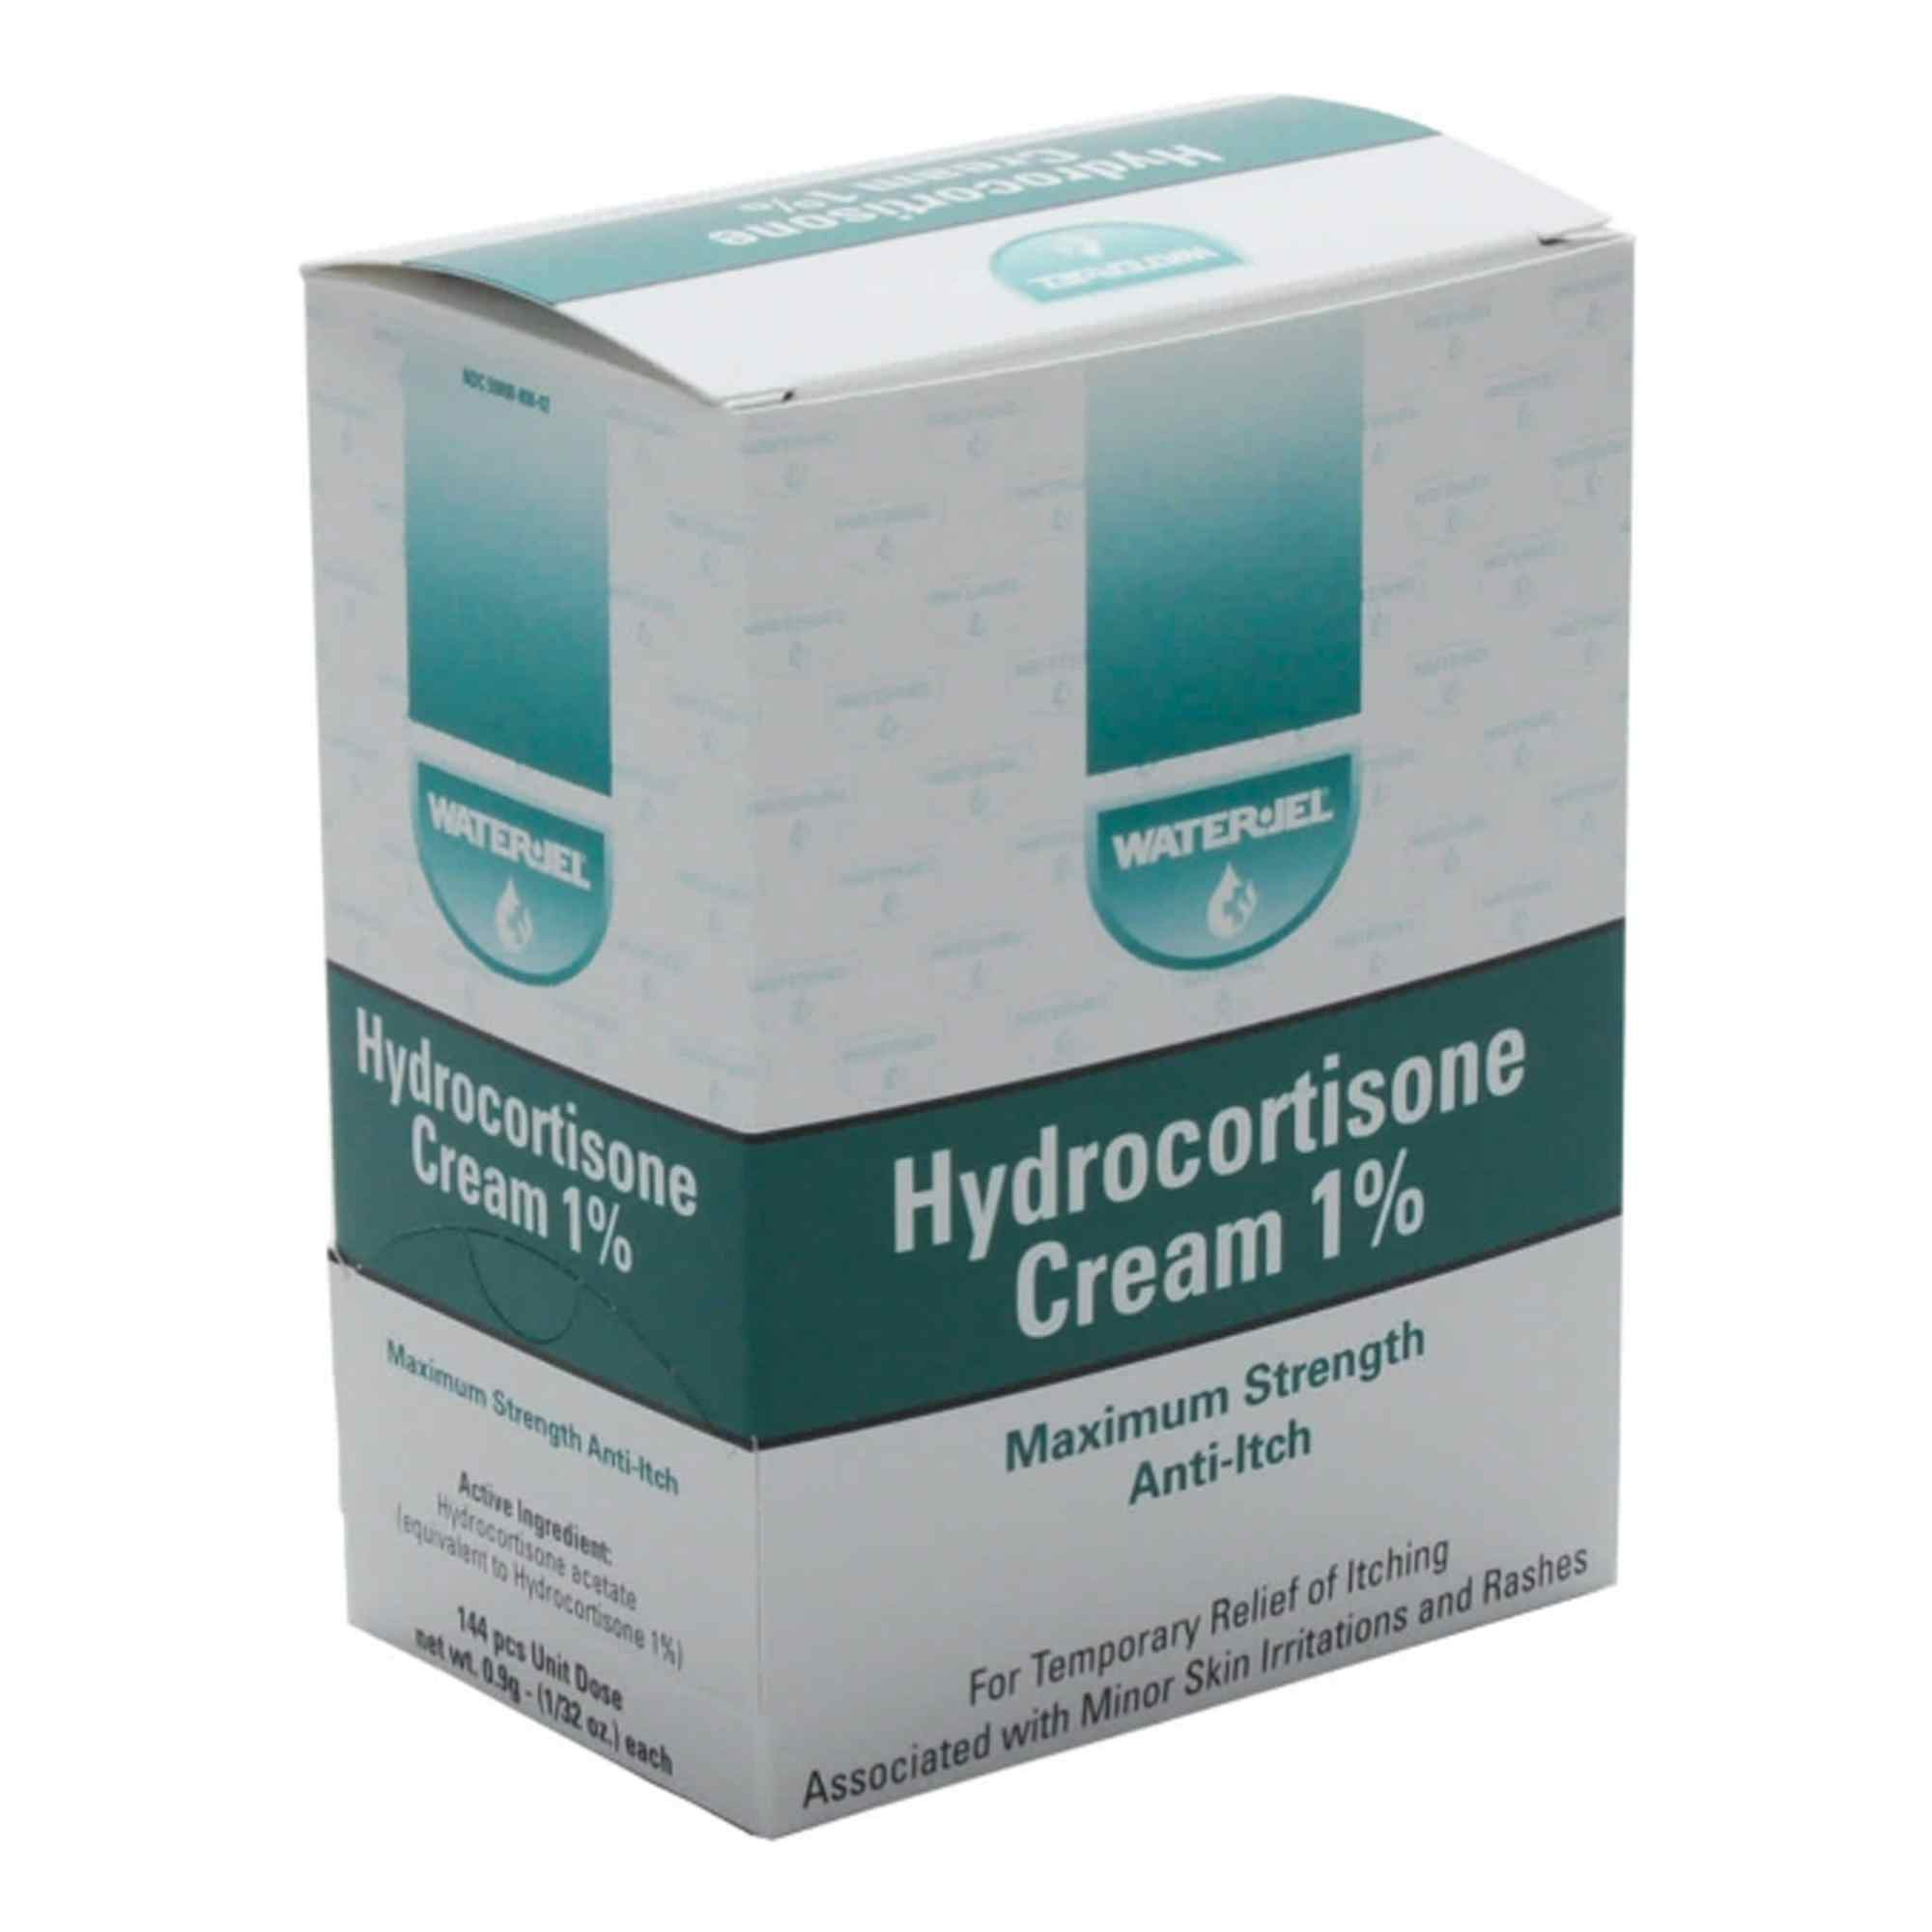 Water-Jel Hydrocortisone Cream, 1% Maximum Strength, WJHY1728, Box of 144